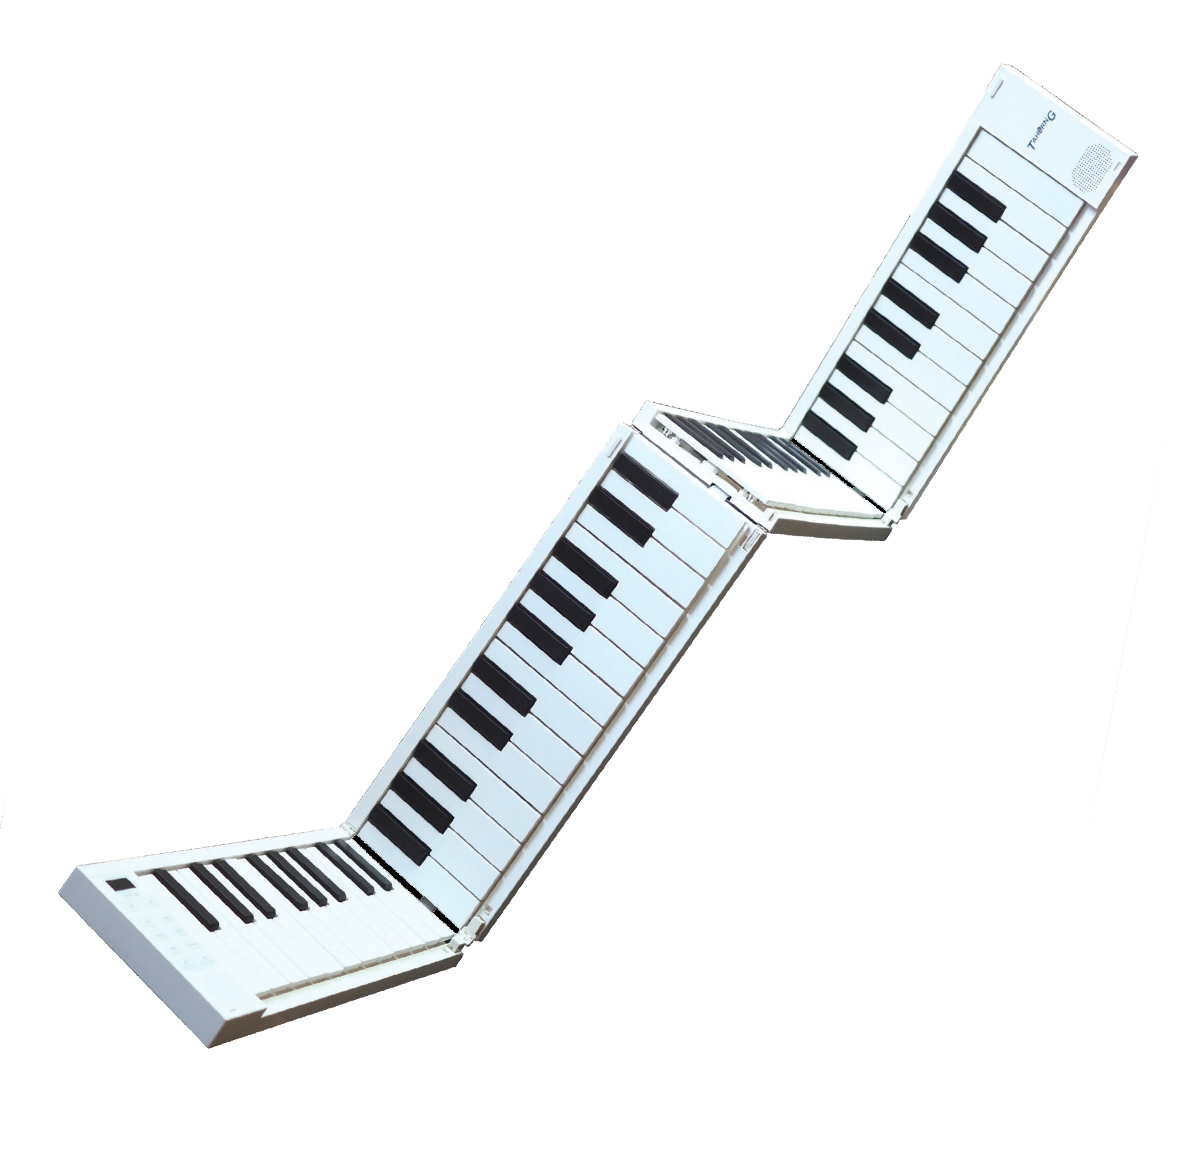 TAHORNG ORIPIA88 折りたたみ式電子ピアノ/MIDIキーボード オリピア OP88 イシバシ楽器